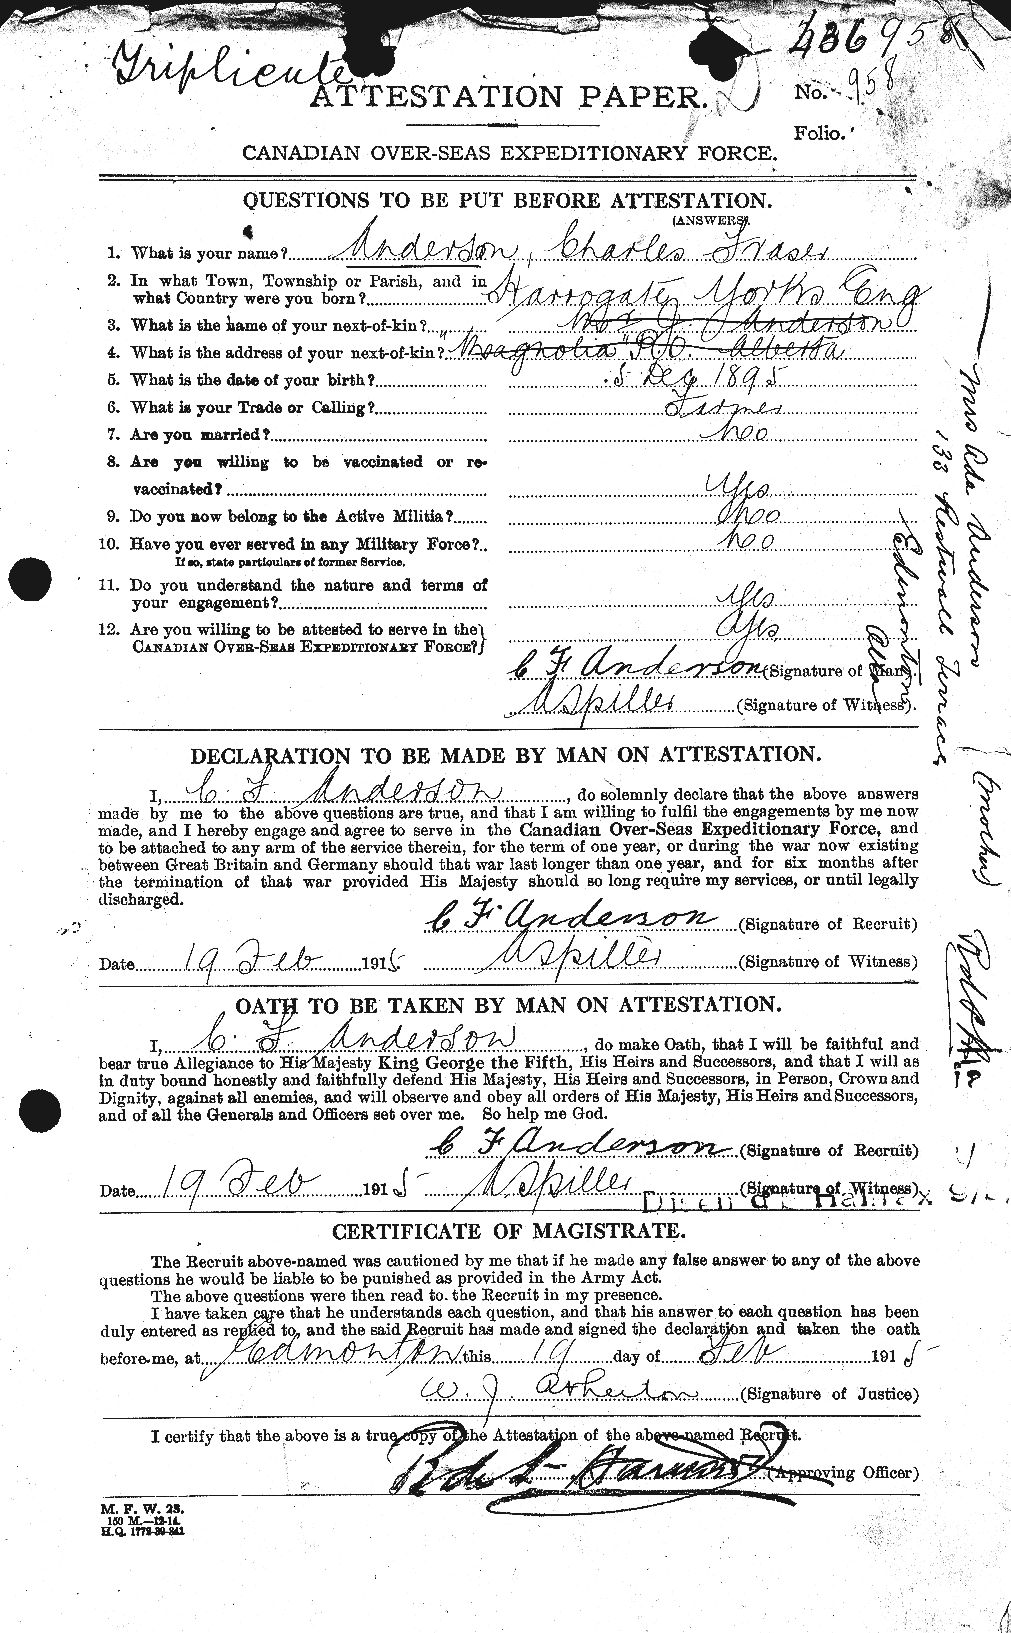 Dossiers du Personnel de la Première Guerre mondiale - CEC 209240a